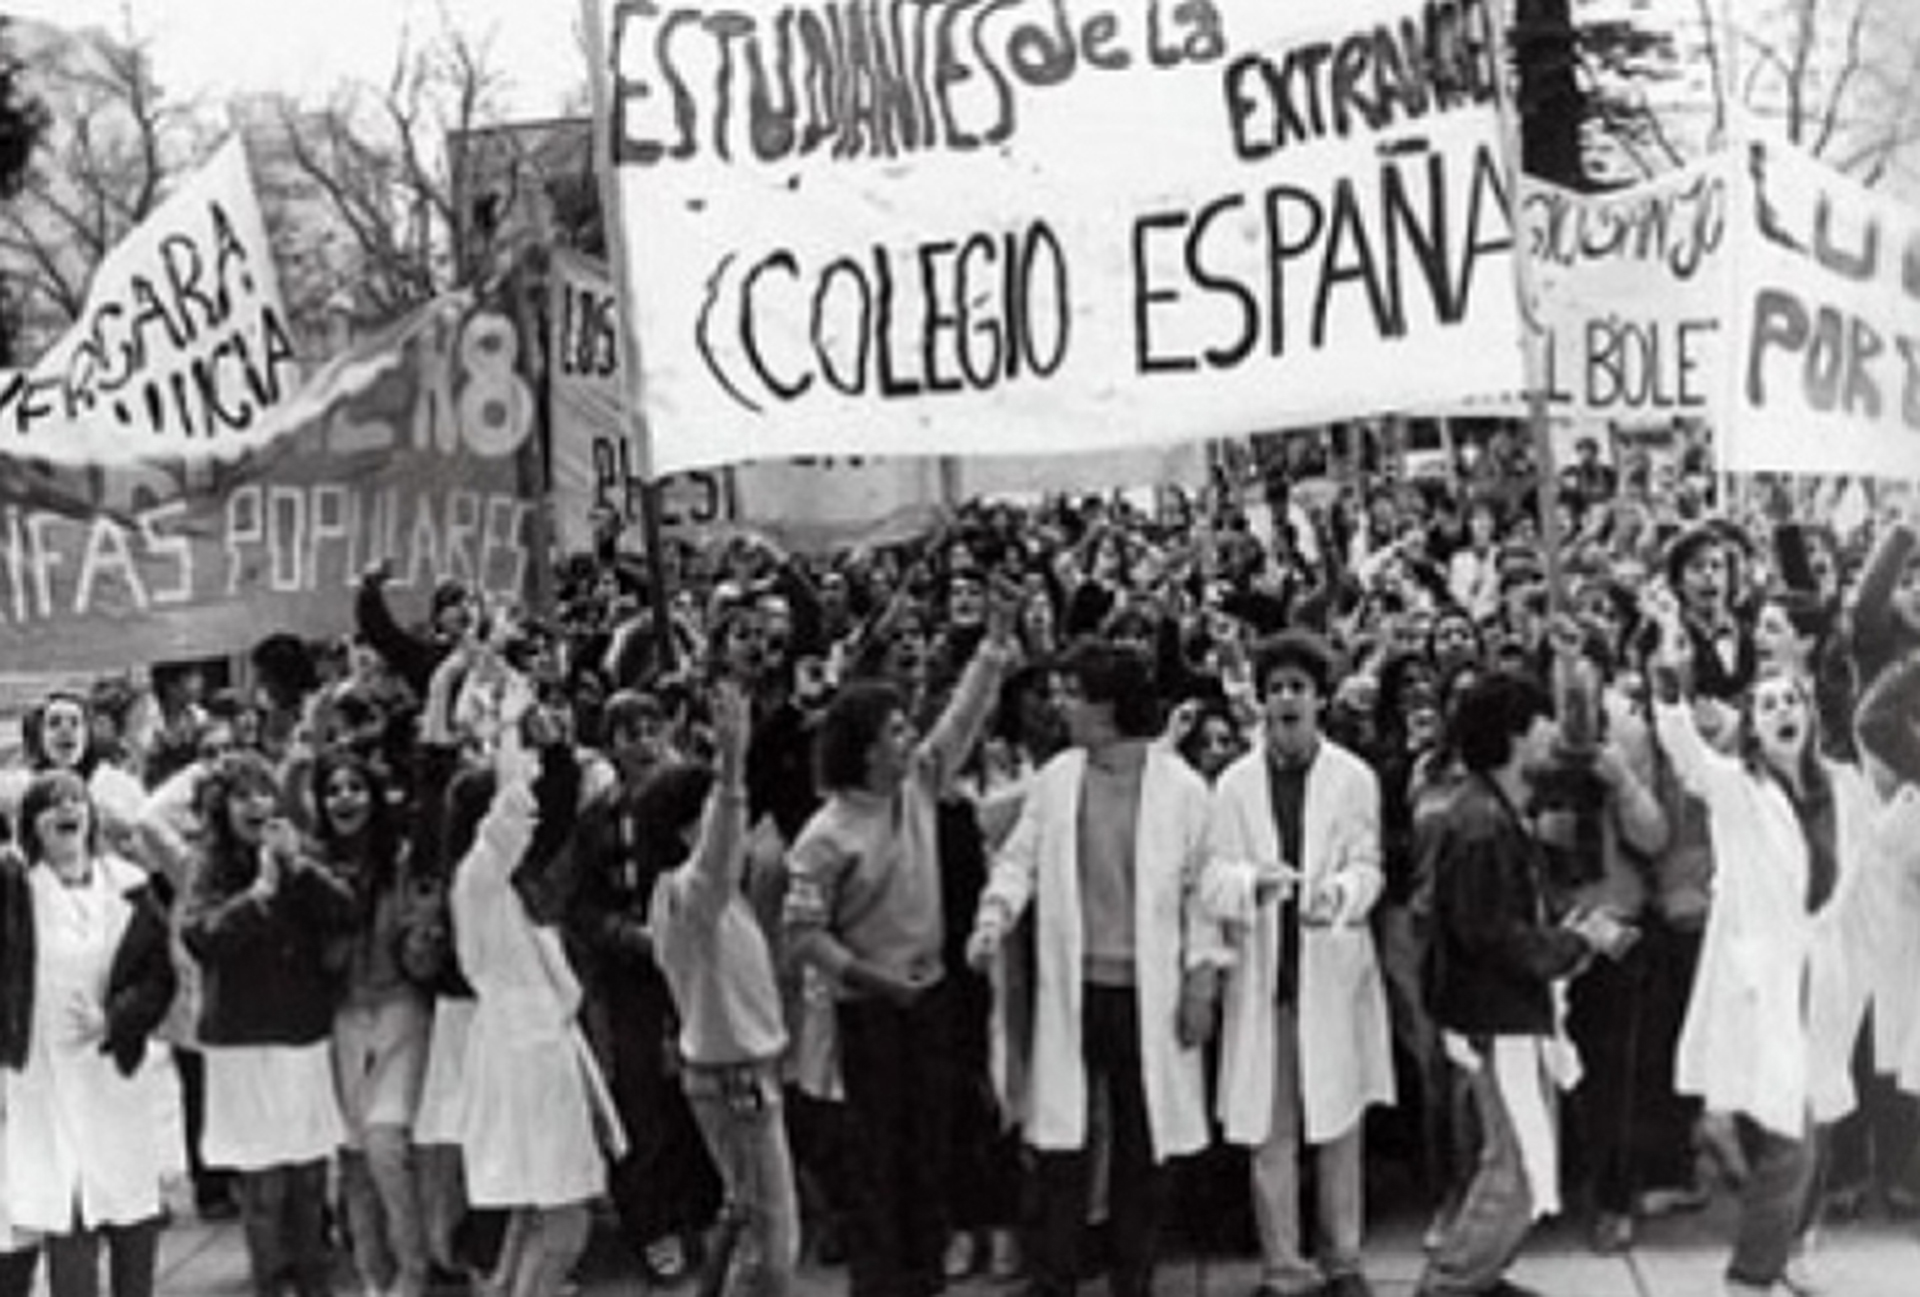 Los estudiantes secuestrados participaban de la lucha por la creación de un boleto estudiantil en la ciudad de La Plata